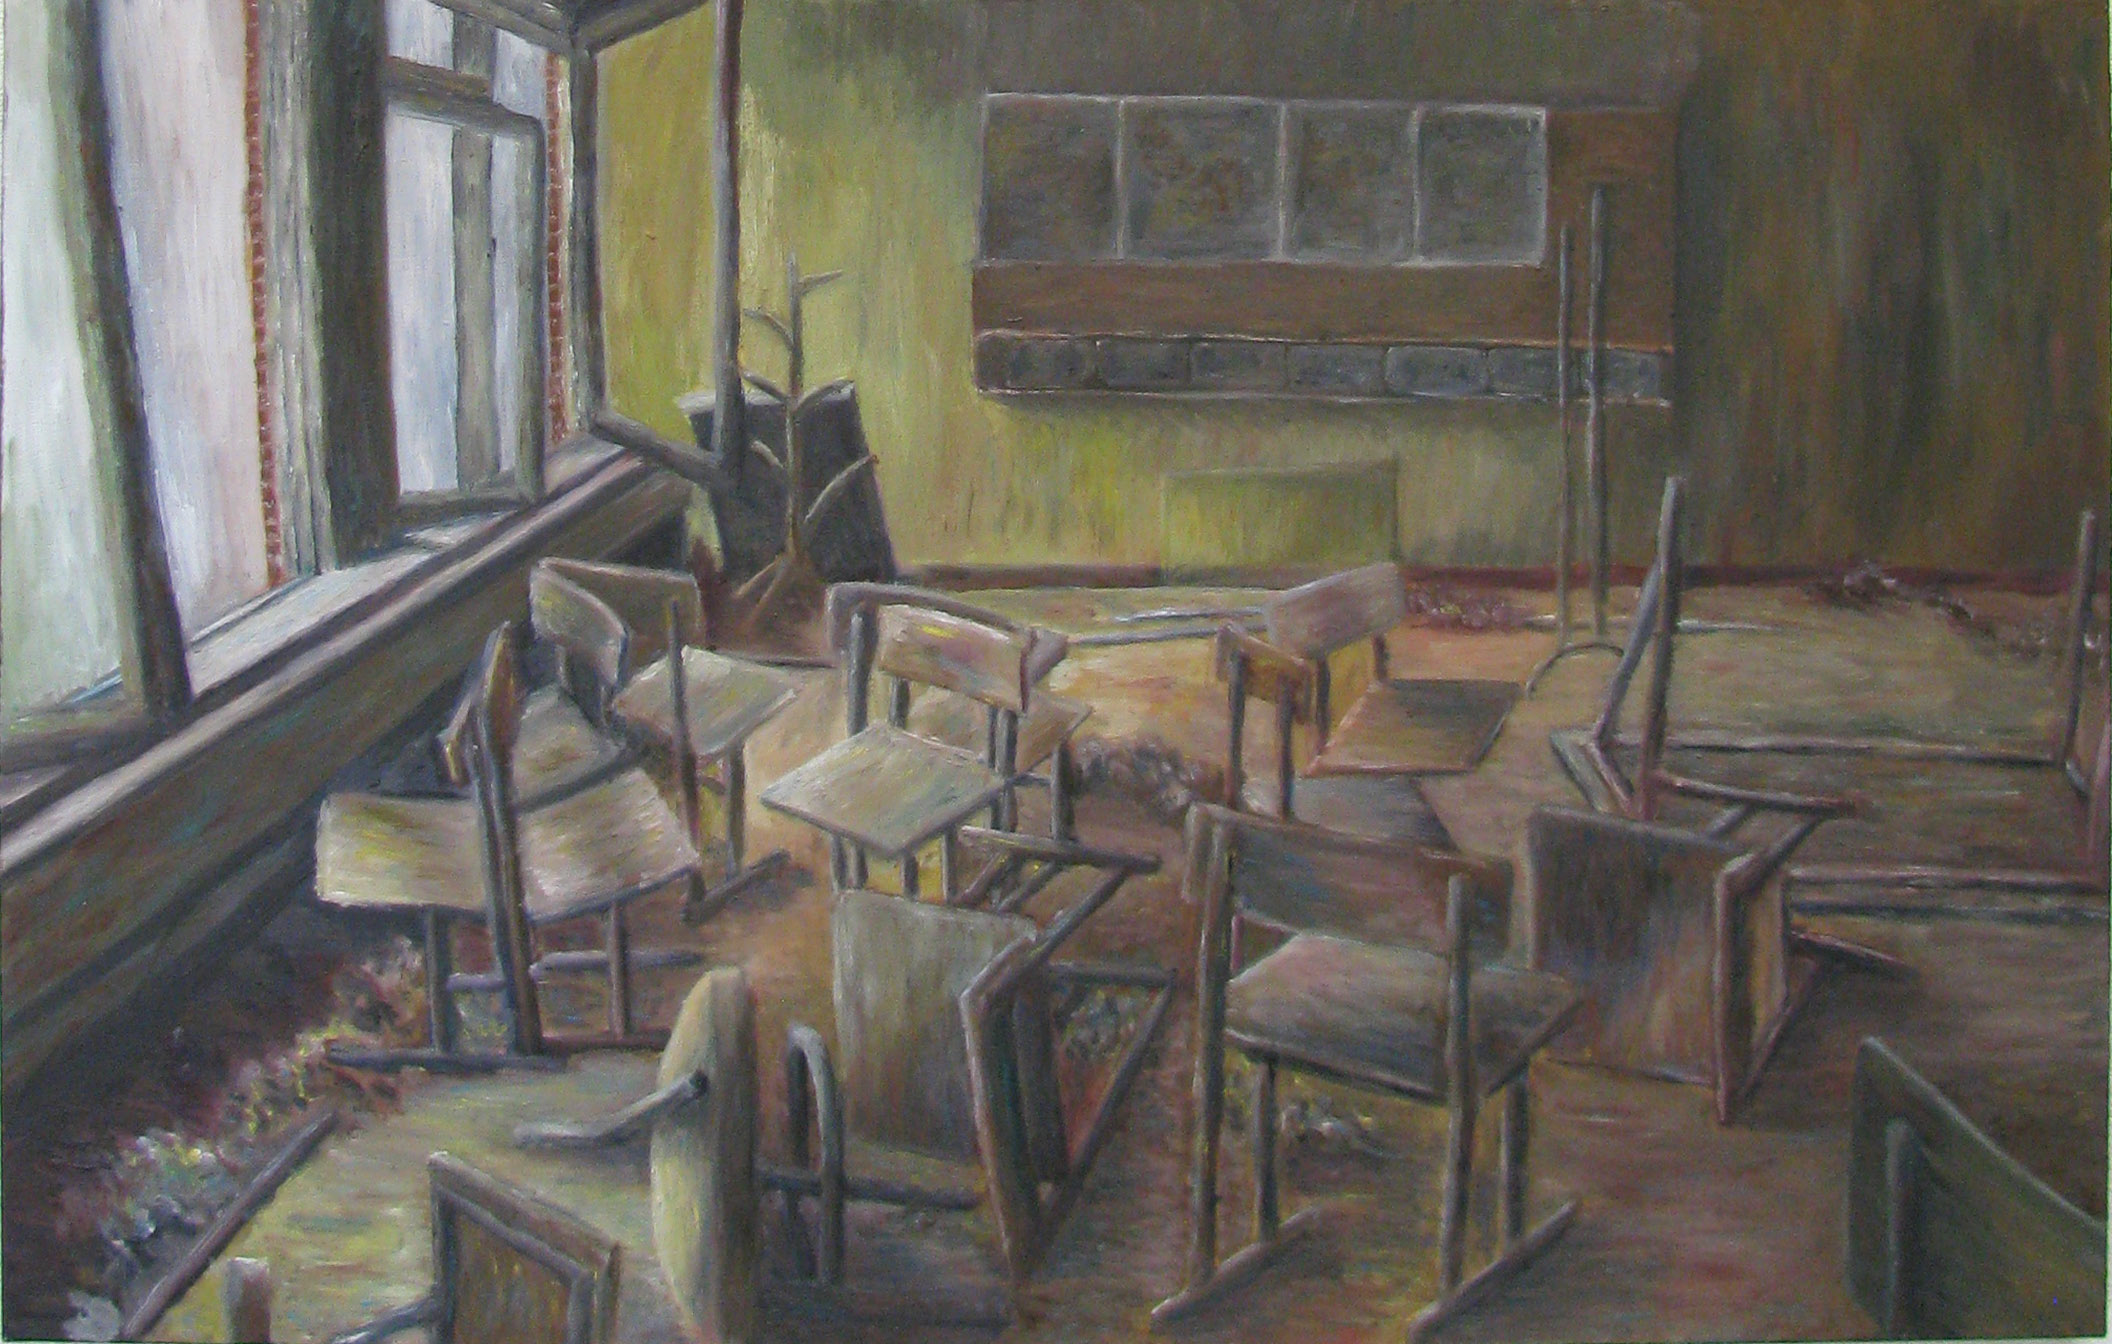 School of Chernobyl by Morgan Tverberg